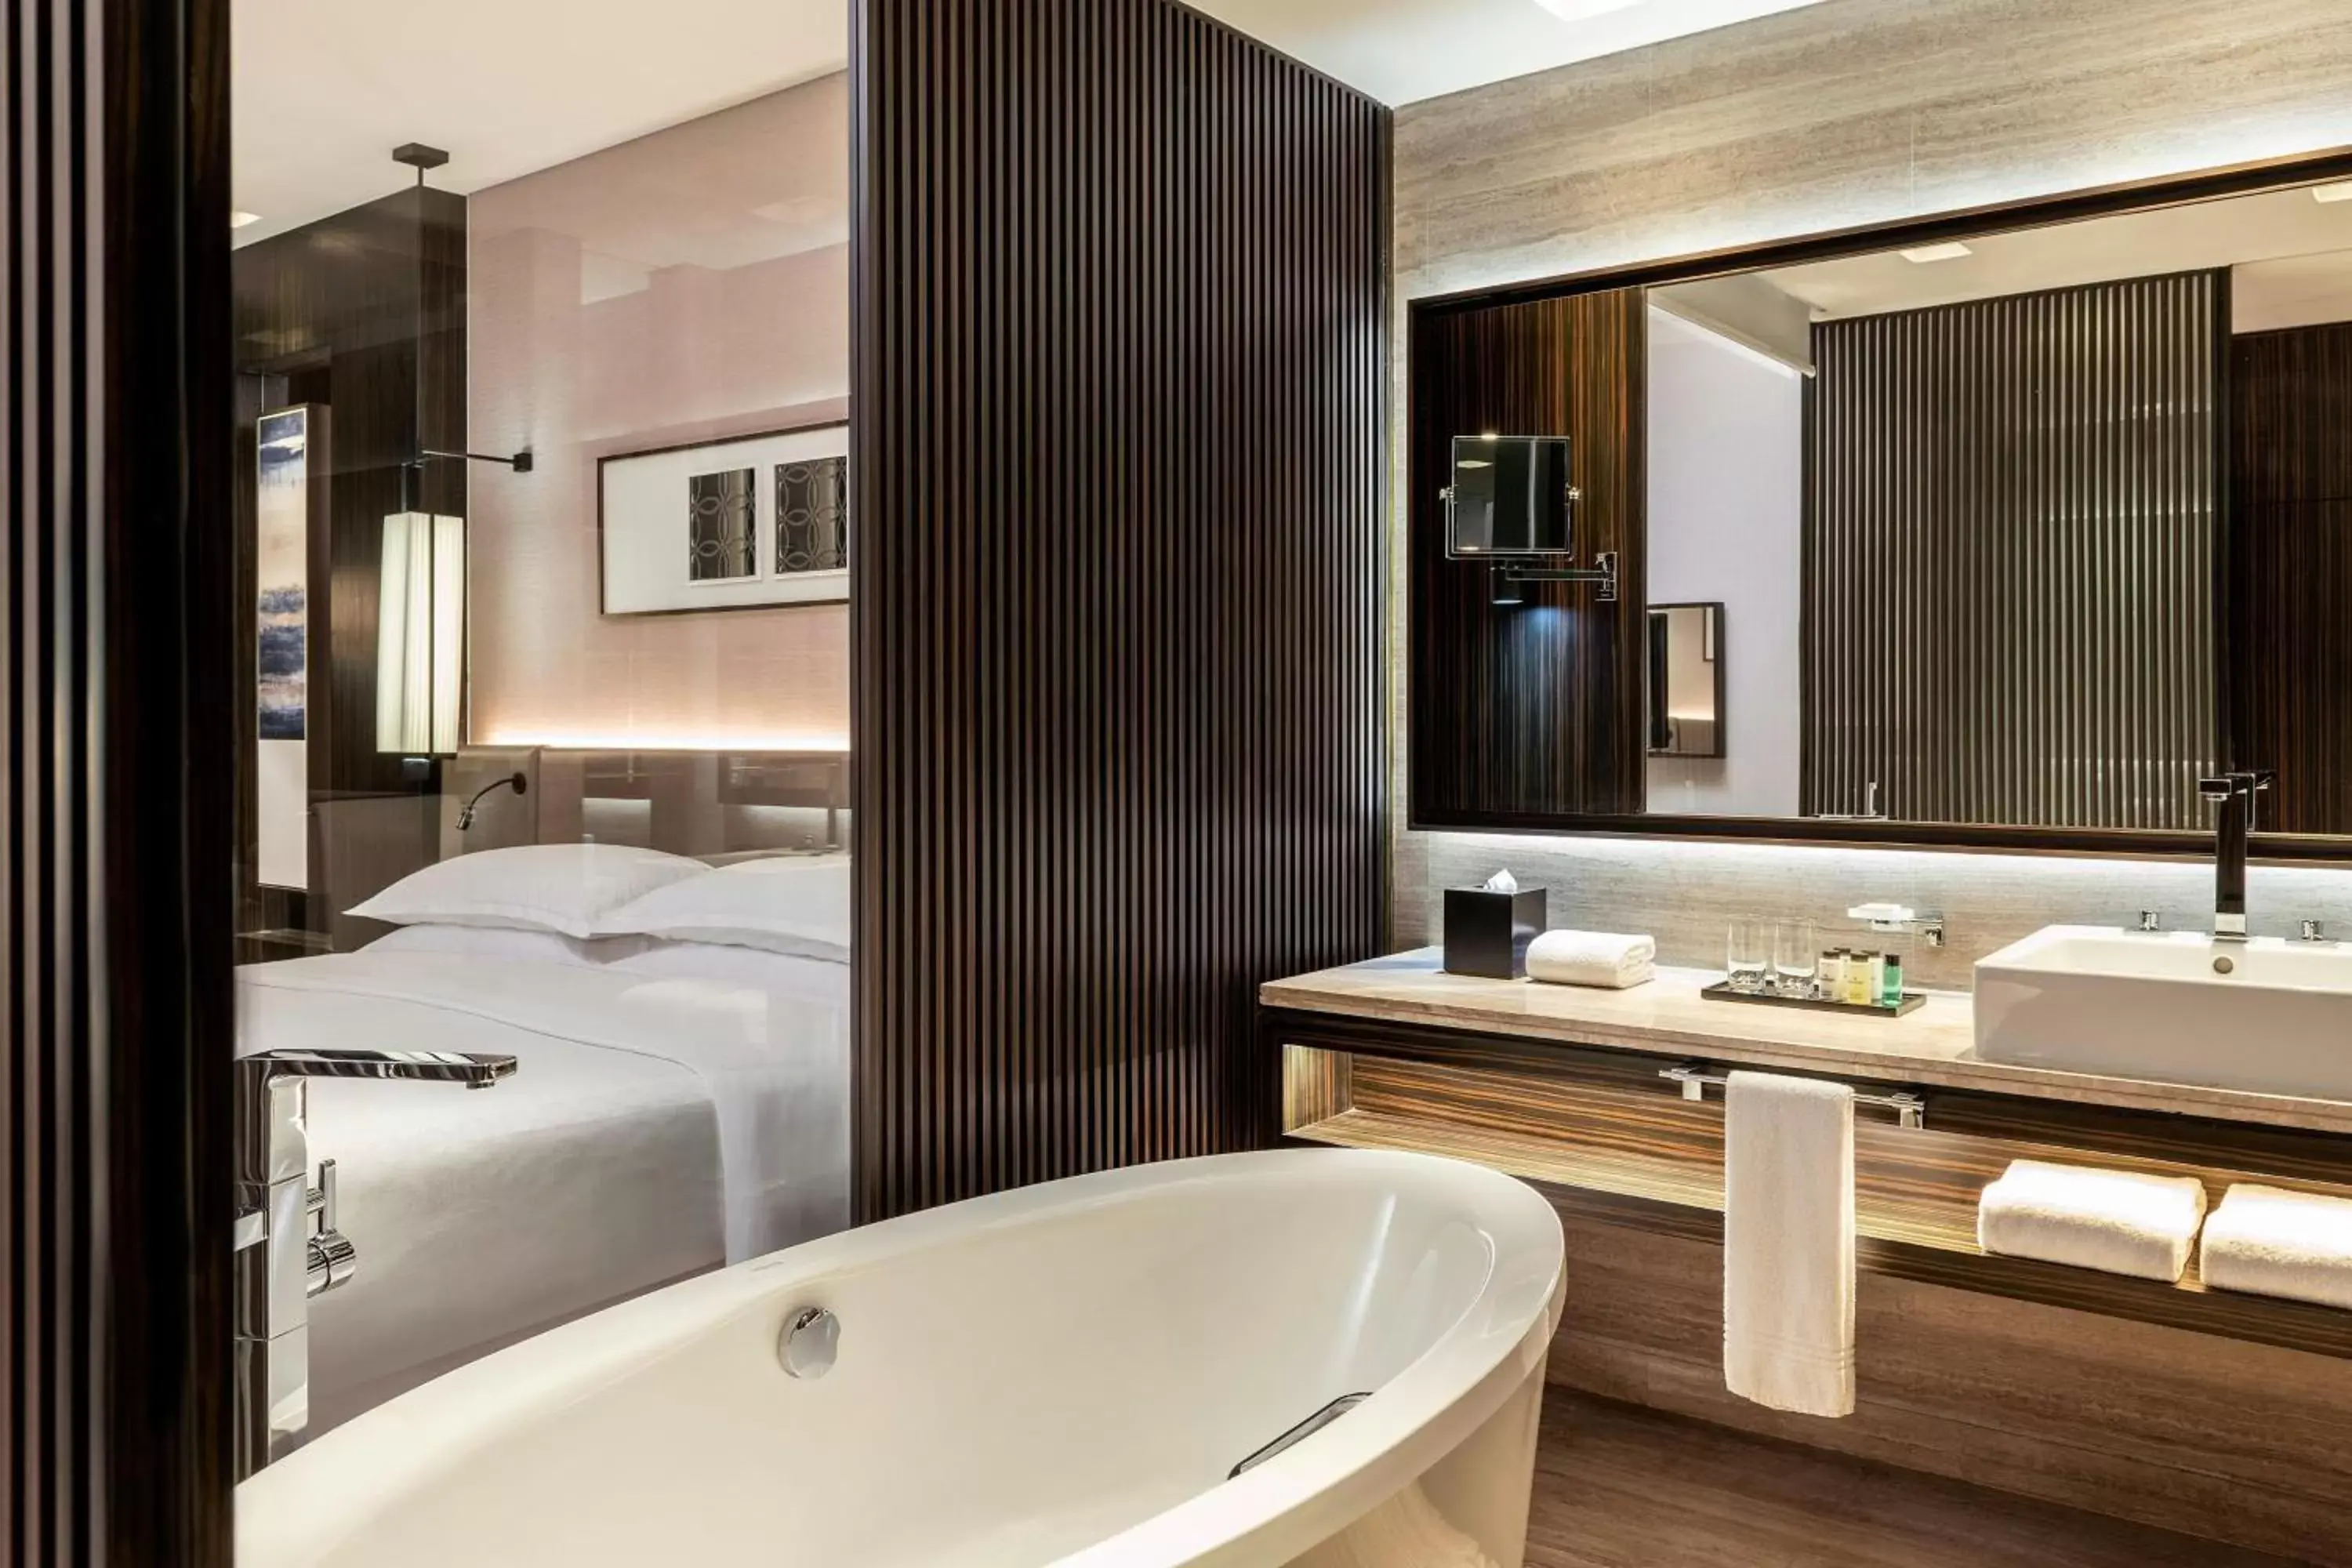 Photo of the whole room, Bathroom in Sheraton Grand Hotel, Dubai